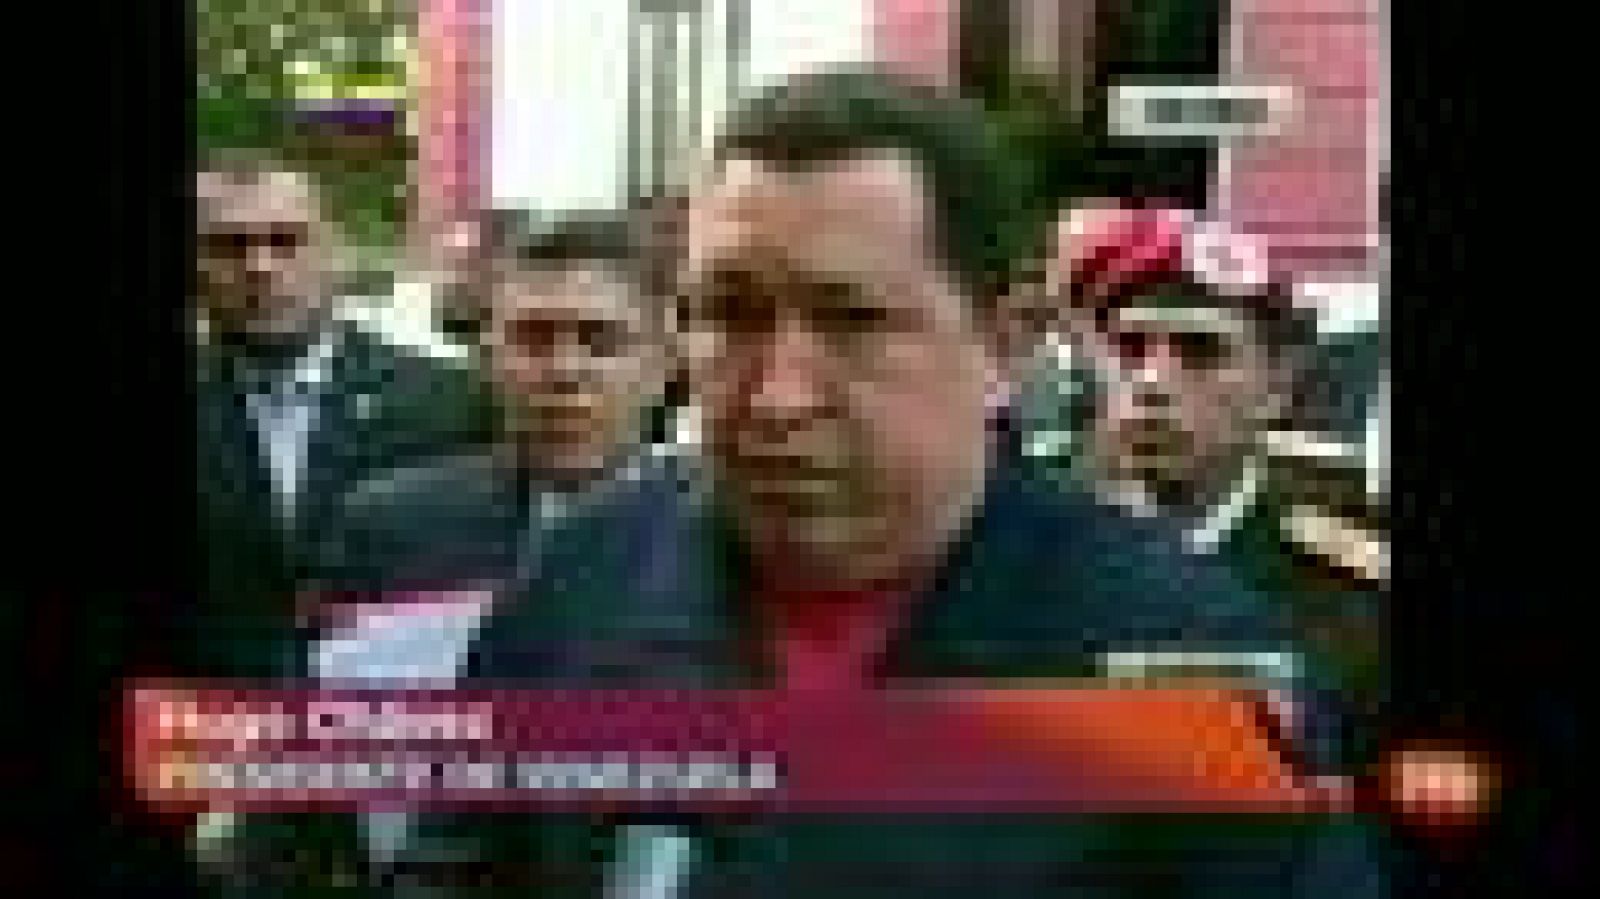 El presidente venezolano, Hugo Chávez, ha indicado que se sometió en los últimos días a los exámenes médicos periódicos de control, que han salido "absolutamente bien", cuando este domingo se cumple un año desde que se operó de una absceso pélvico que terminó desvelando un cáncer.